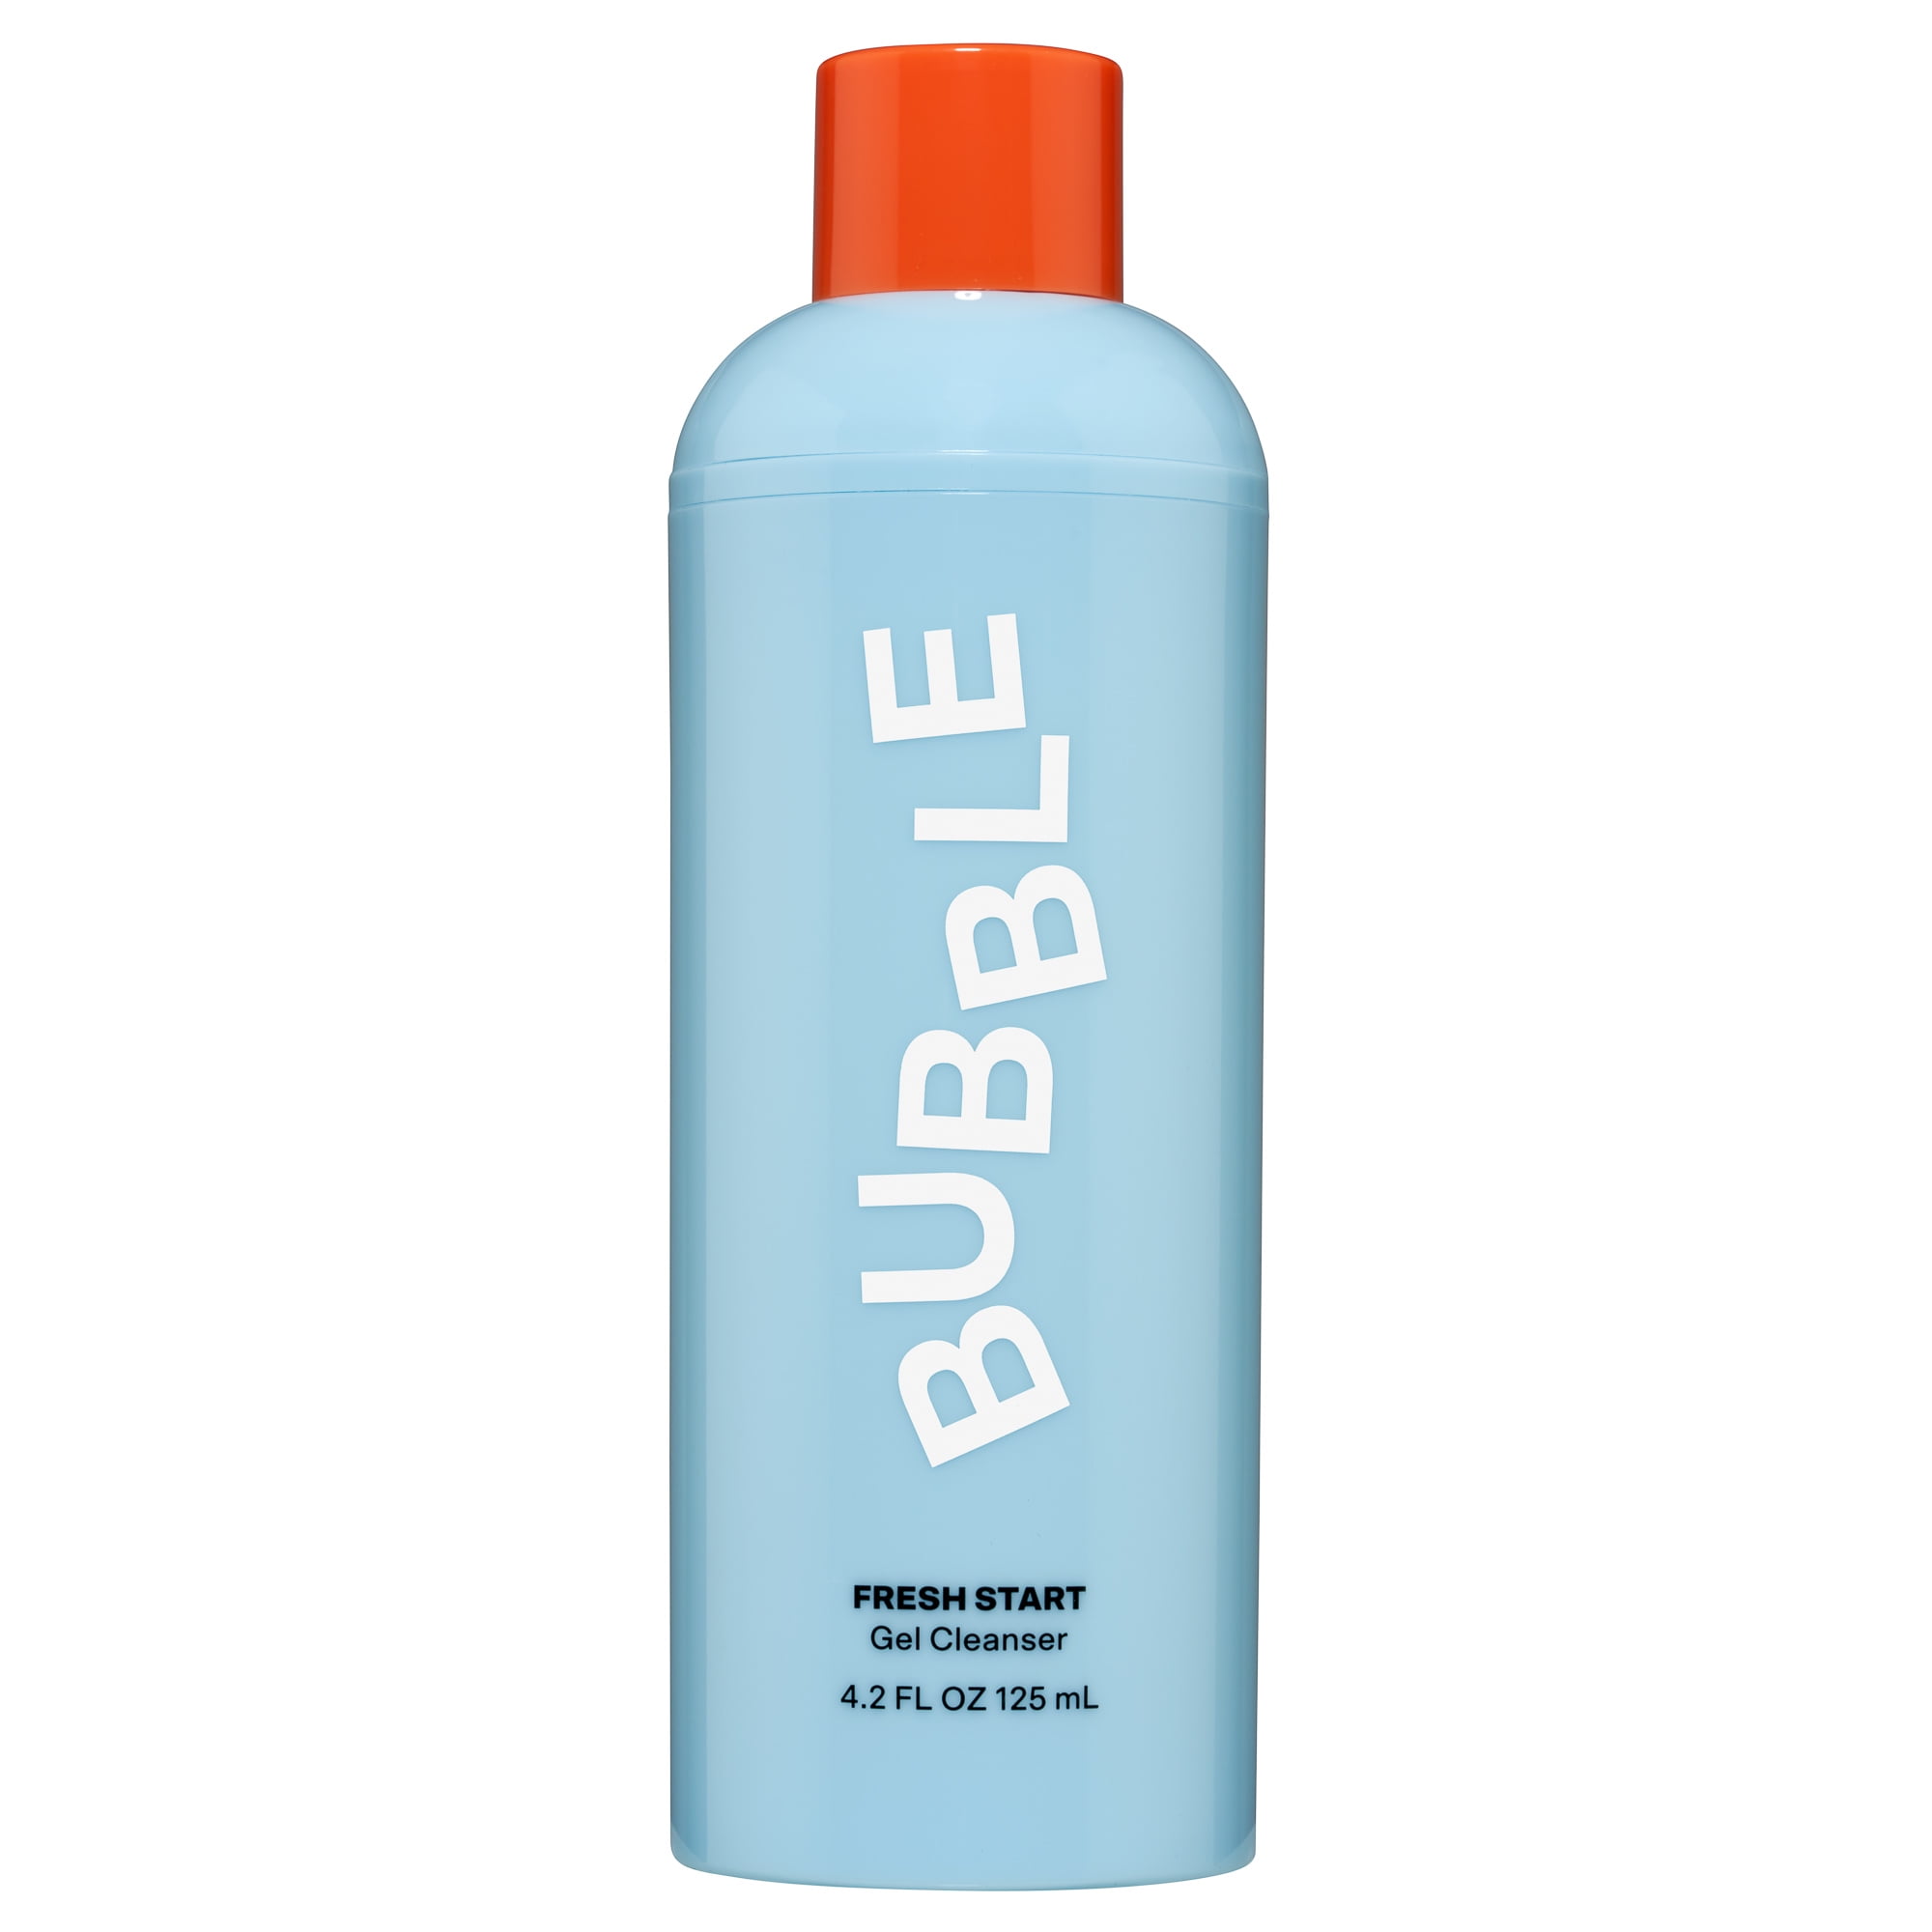 Bubble Skincare Fresh Start Gel Cleanser, For All Skin Types, 4.2 FL OZ /  125mL